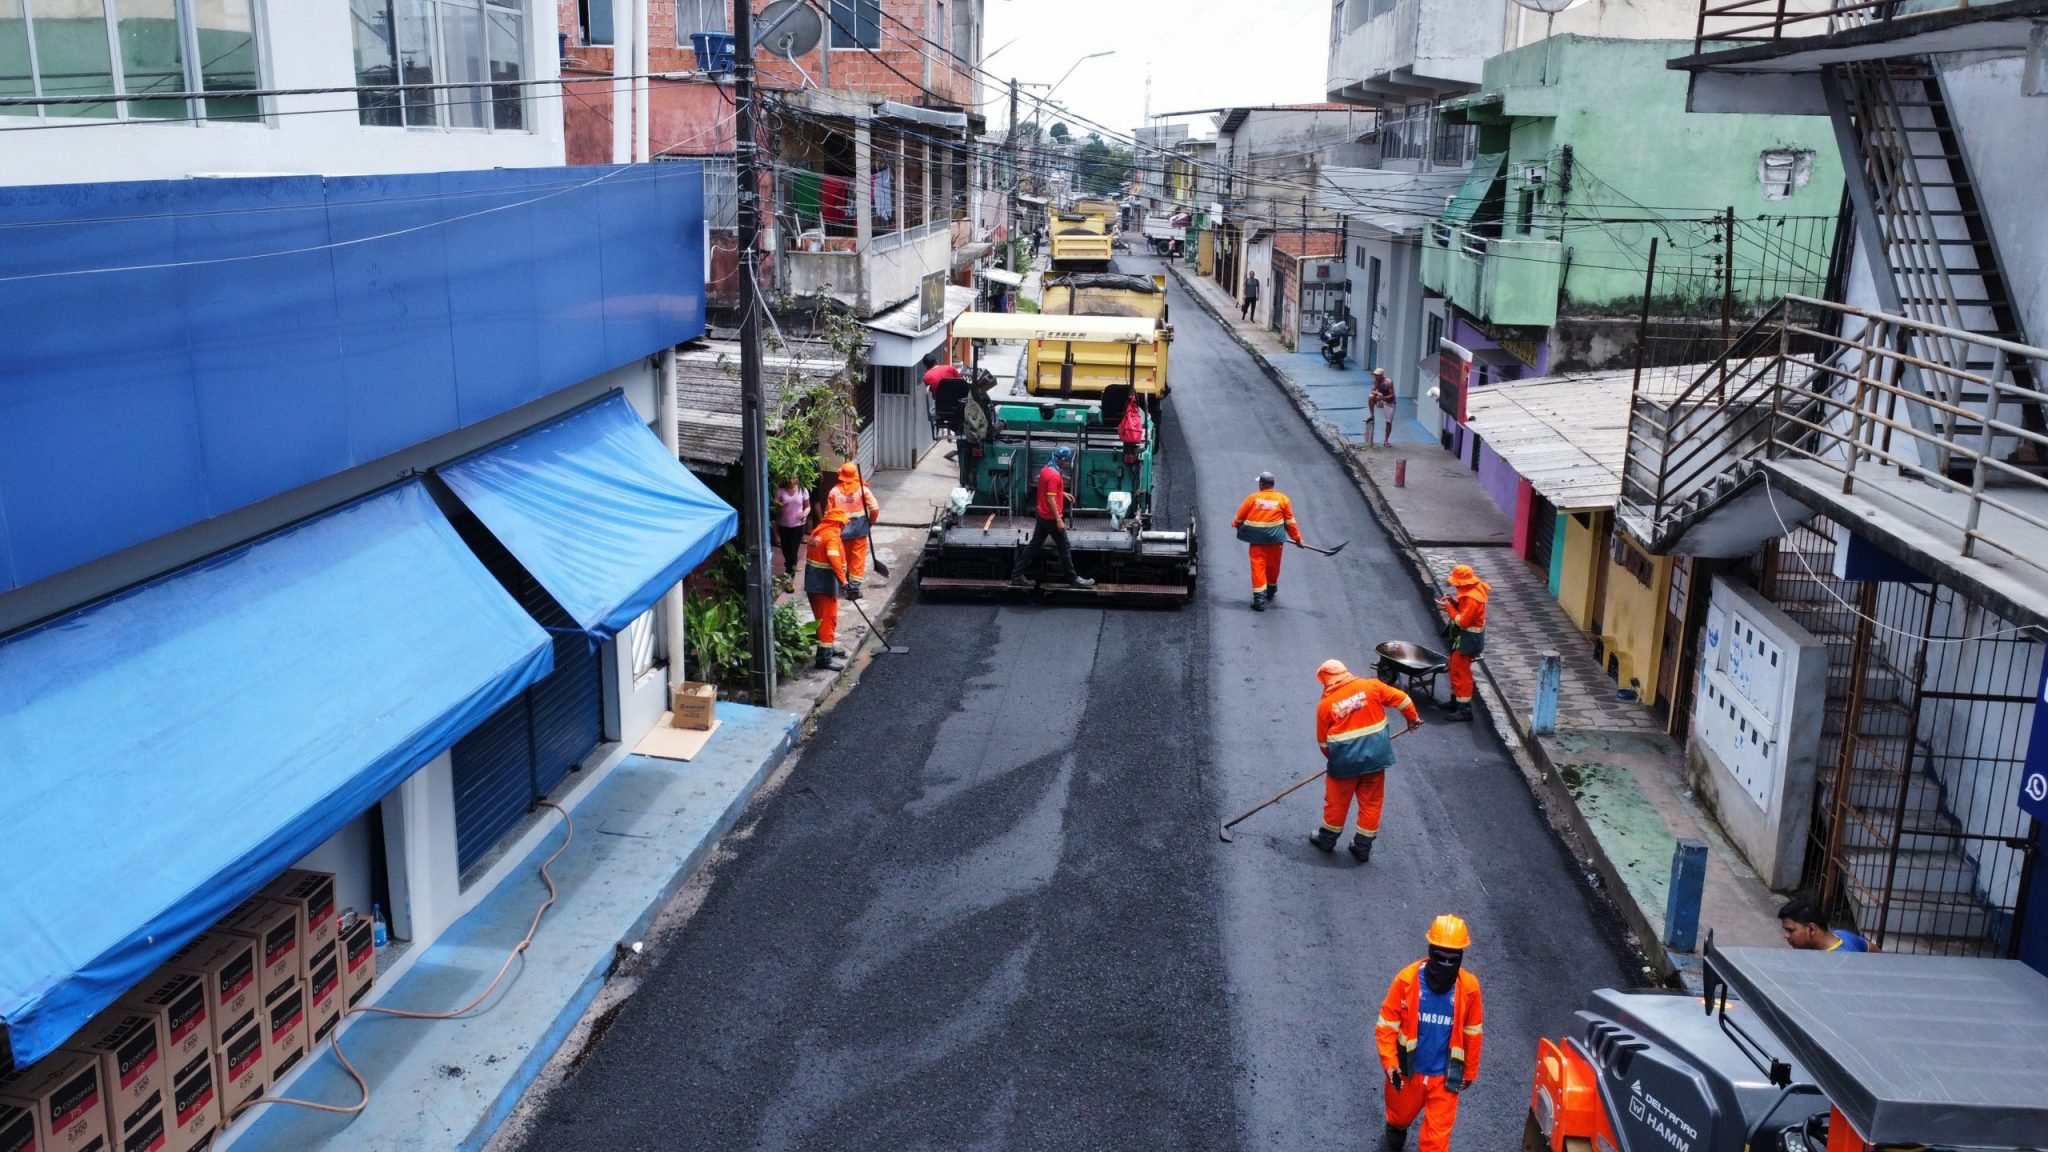 Prefeitura de Manaus aplica 200 toneladas de massa asfaltica na rua 12 do bairro Alvorada scaled 2048x1152 1